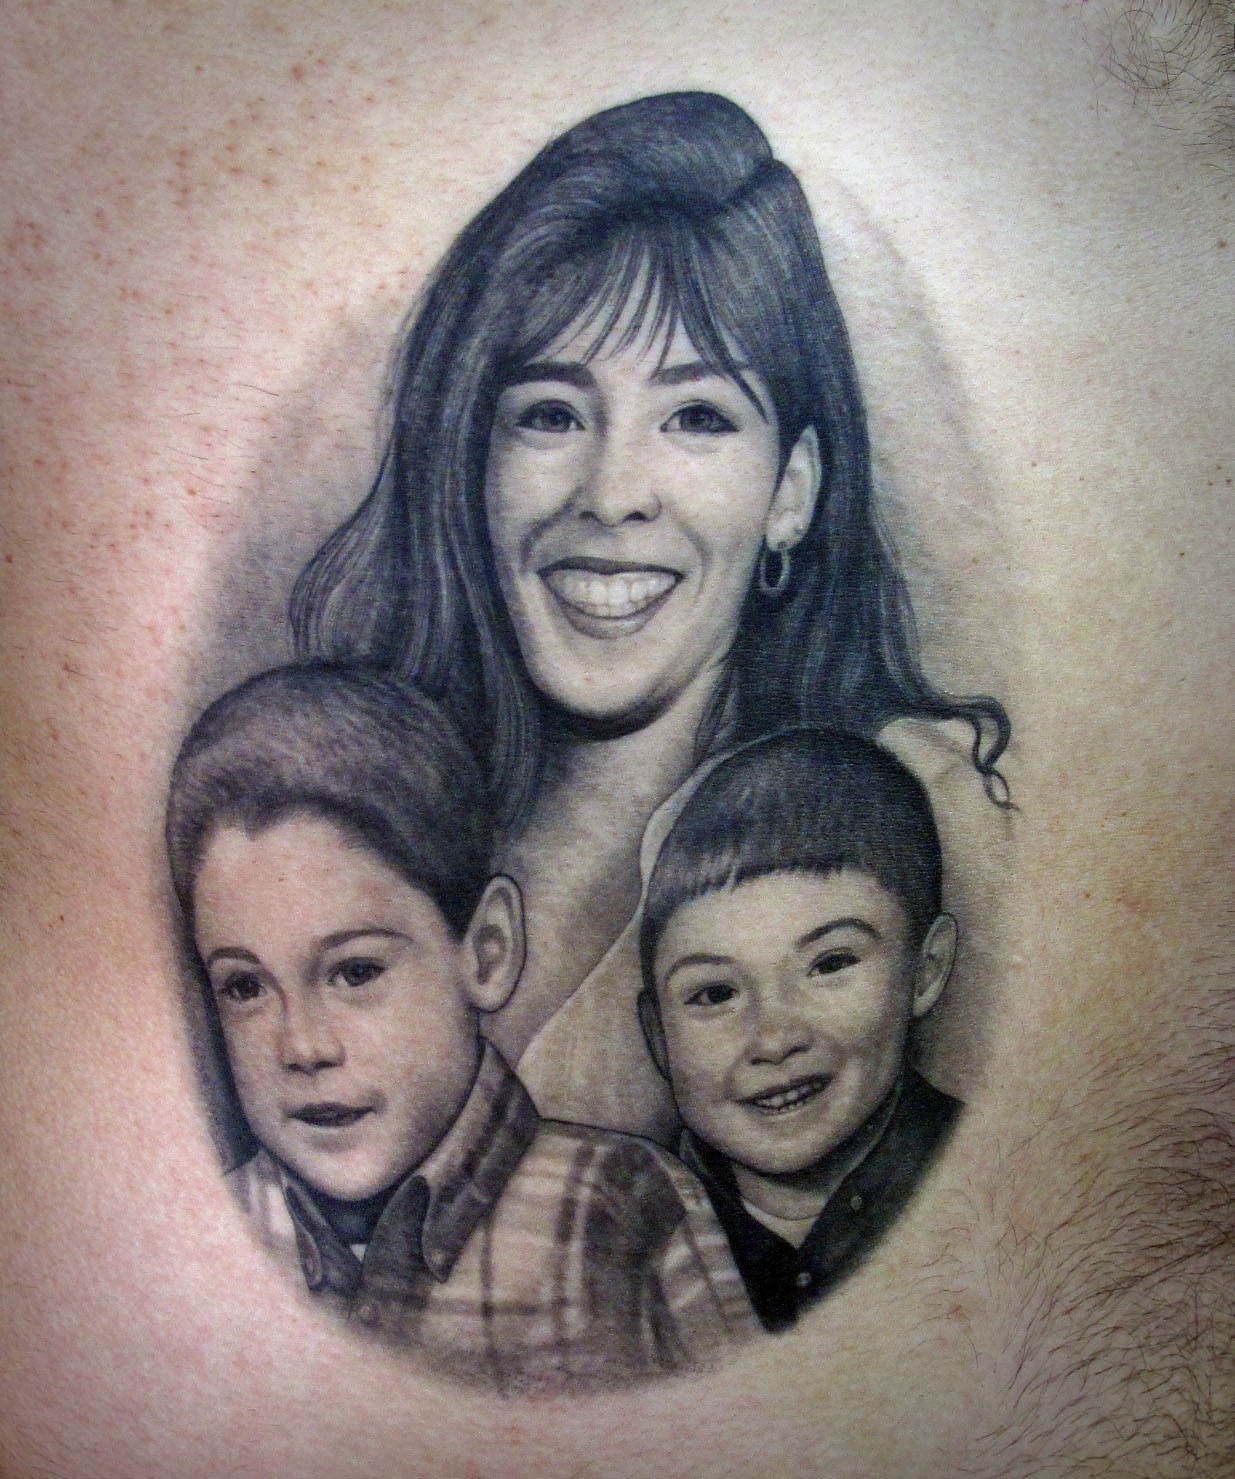 Минималистичные татуировки для семей, которые хотят выразить свою любовь